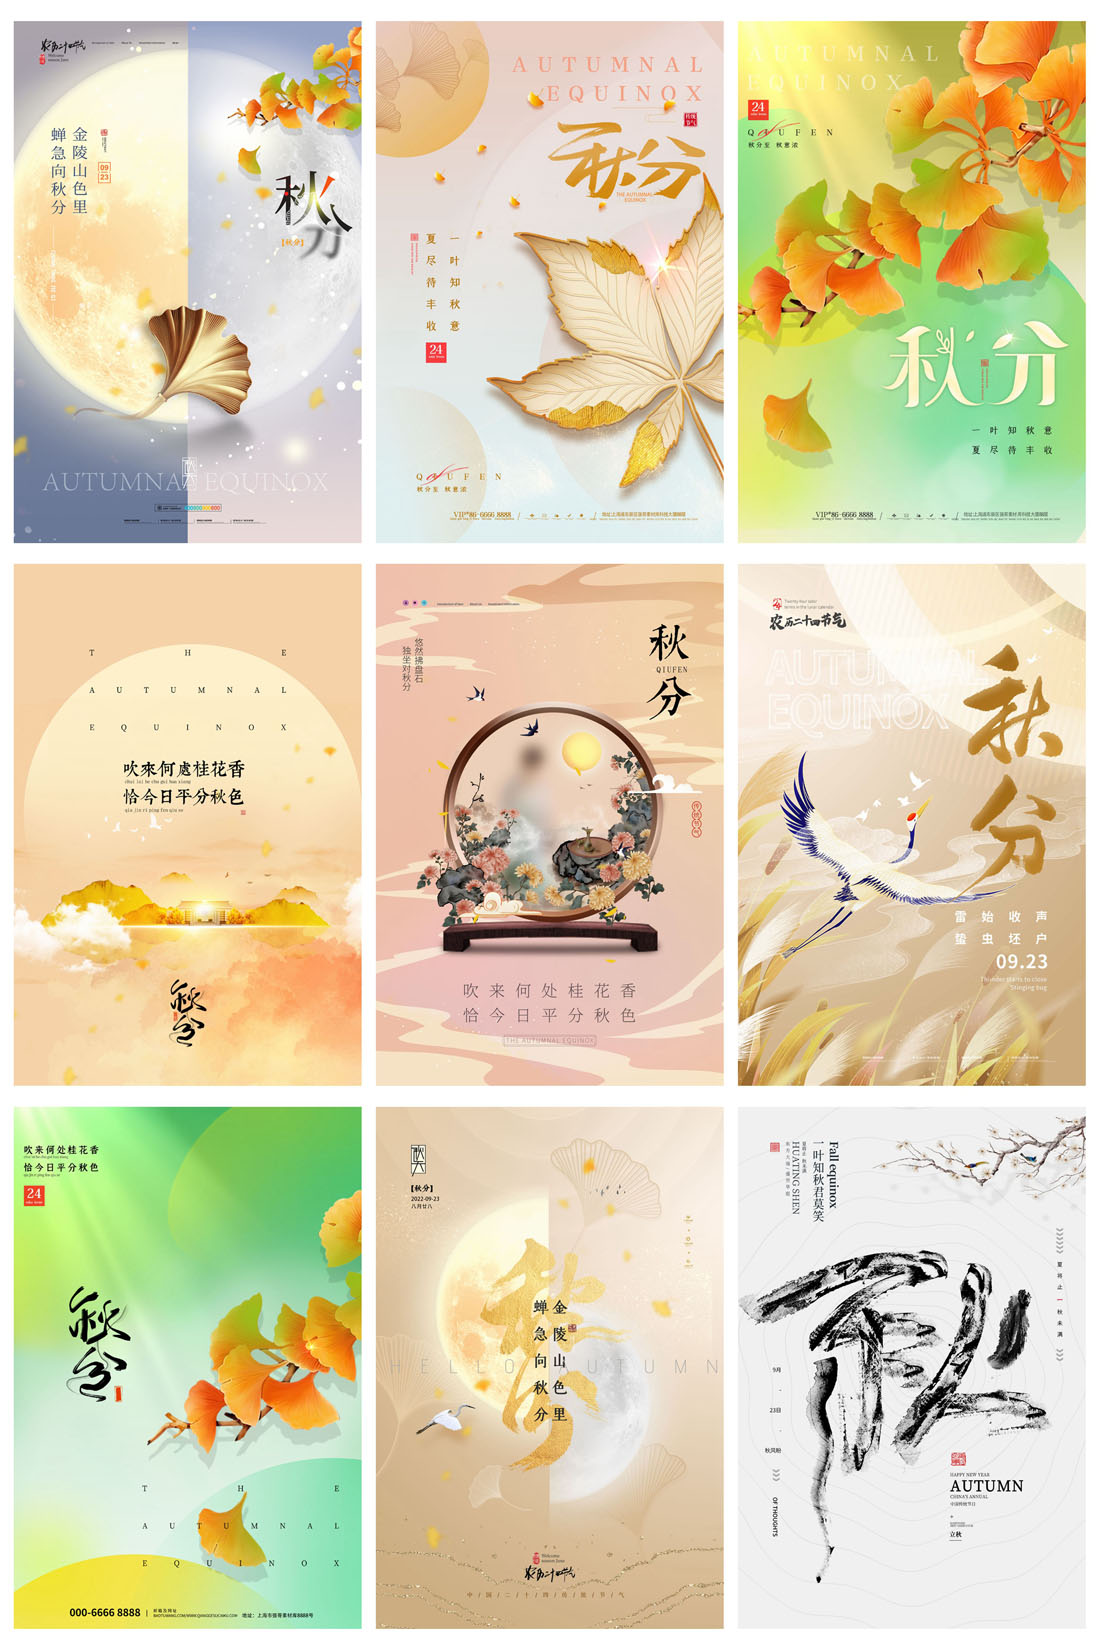 52款中国传统节日二十四节气秋分节日宣传海报PSD模板 设计素材 第8张